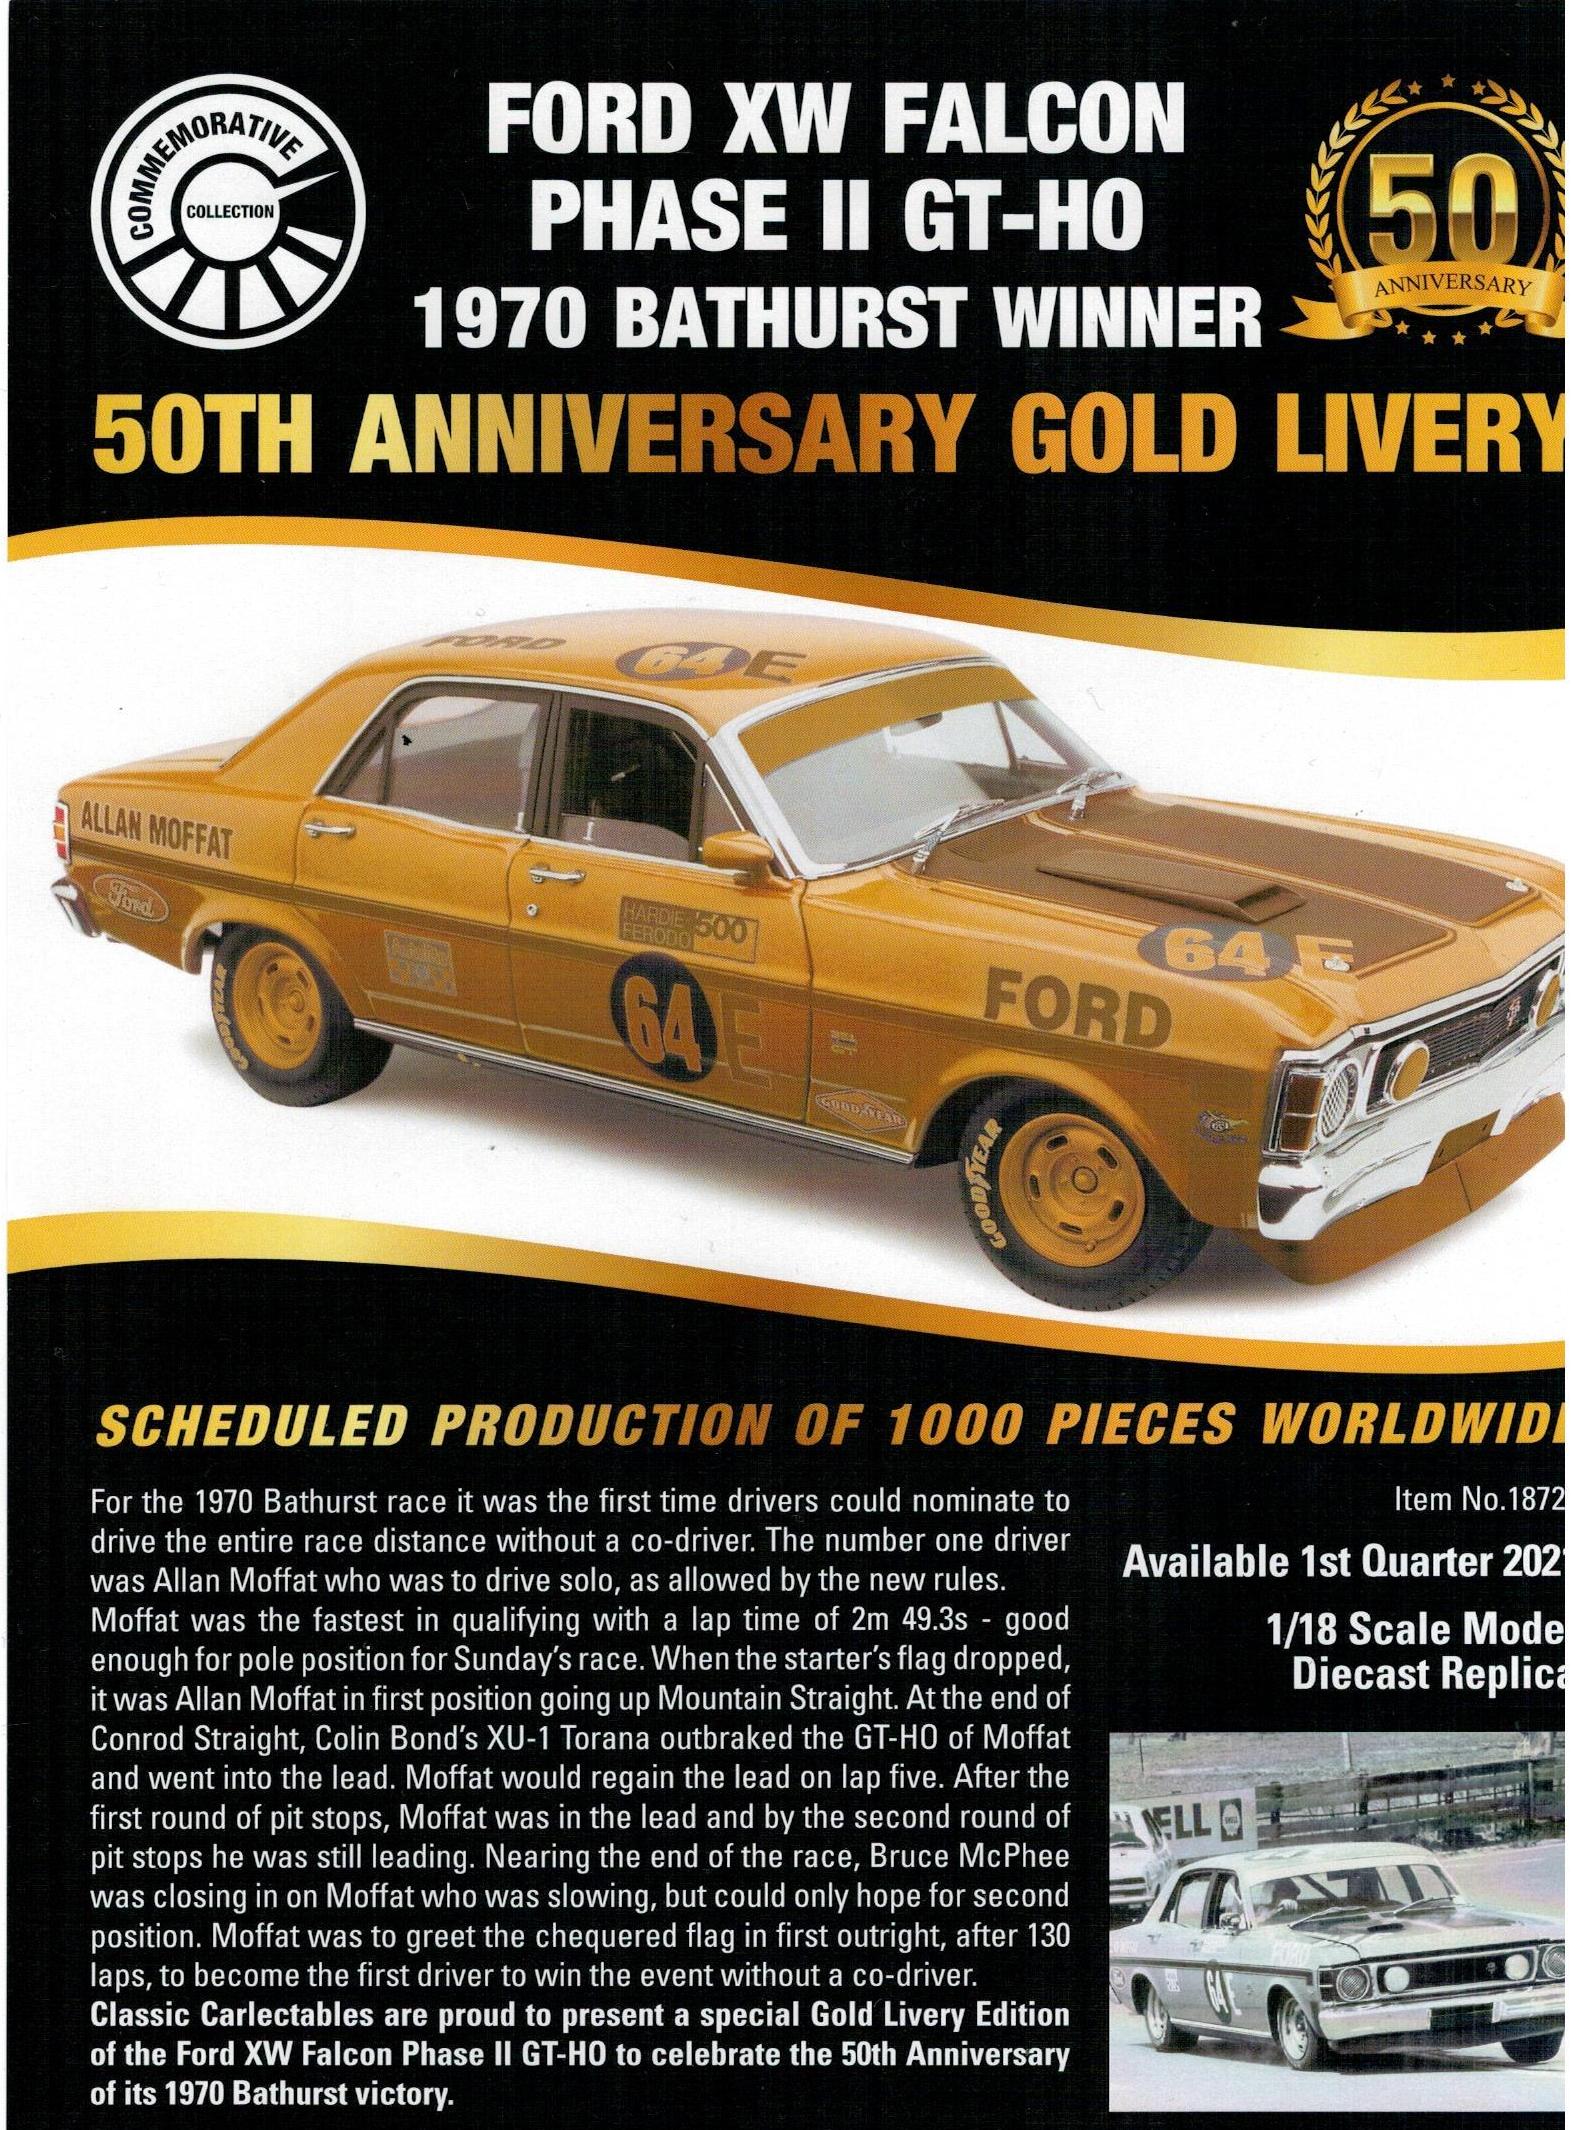 1970 Bathurst Winner Gold Livery 50th Anniversary Edition Allan Moffat #64E Ford XW Falcon 1:18 Scale Model Car